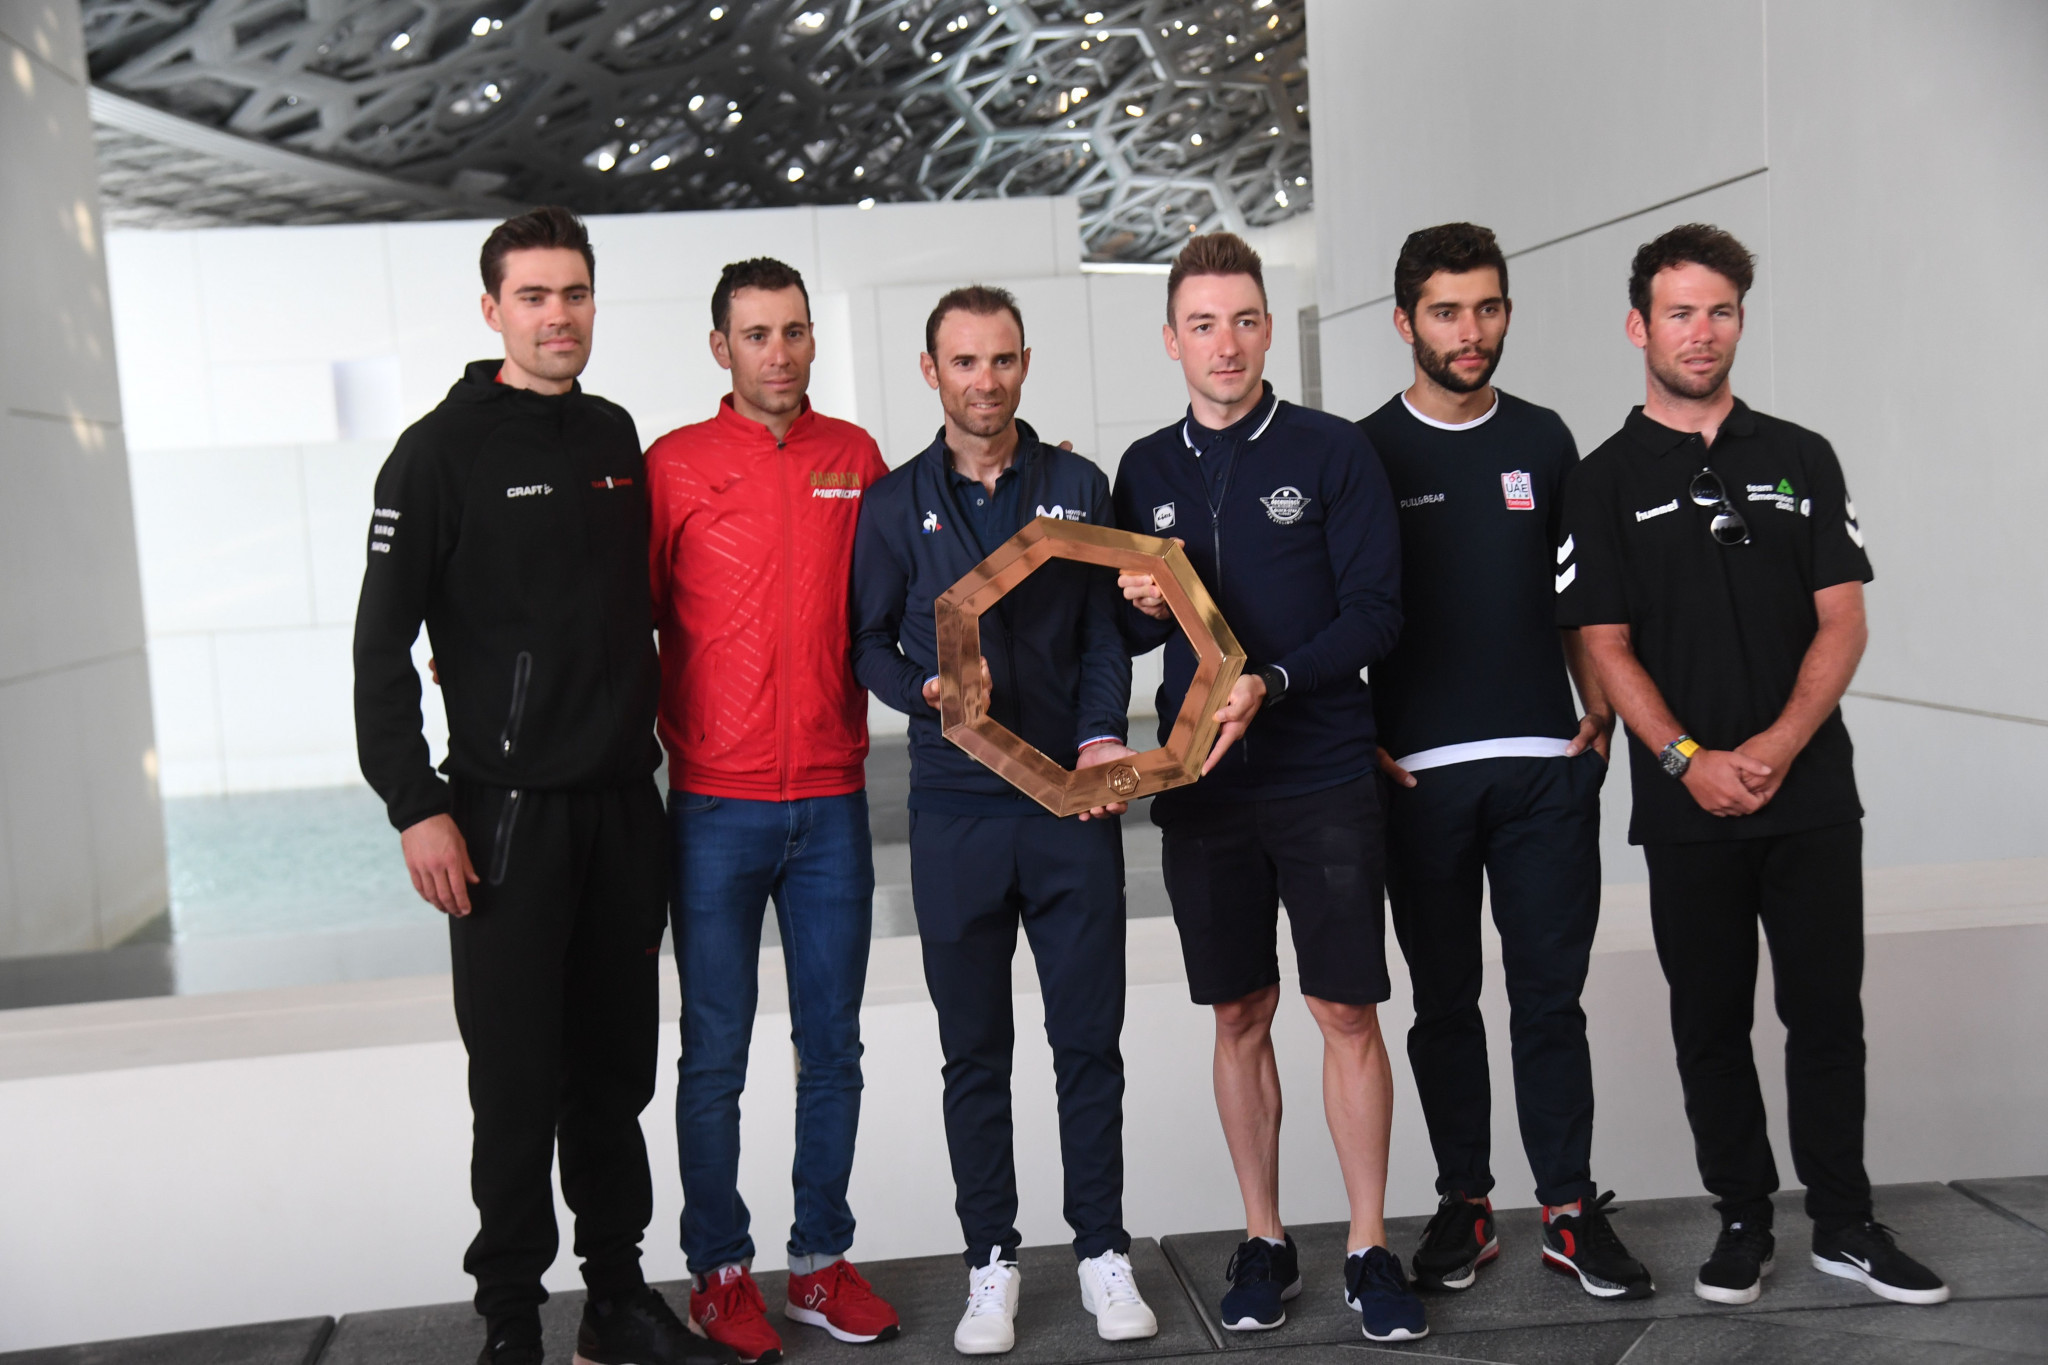 UAE Tour set to make debut on UCI WorldTour circuit